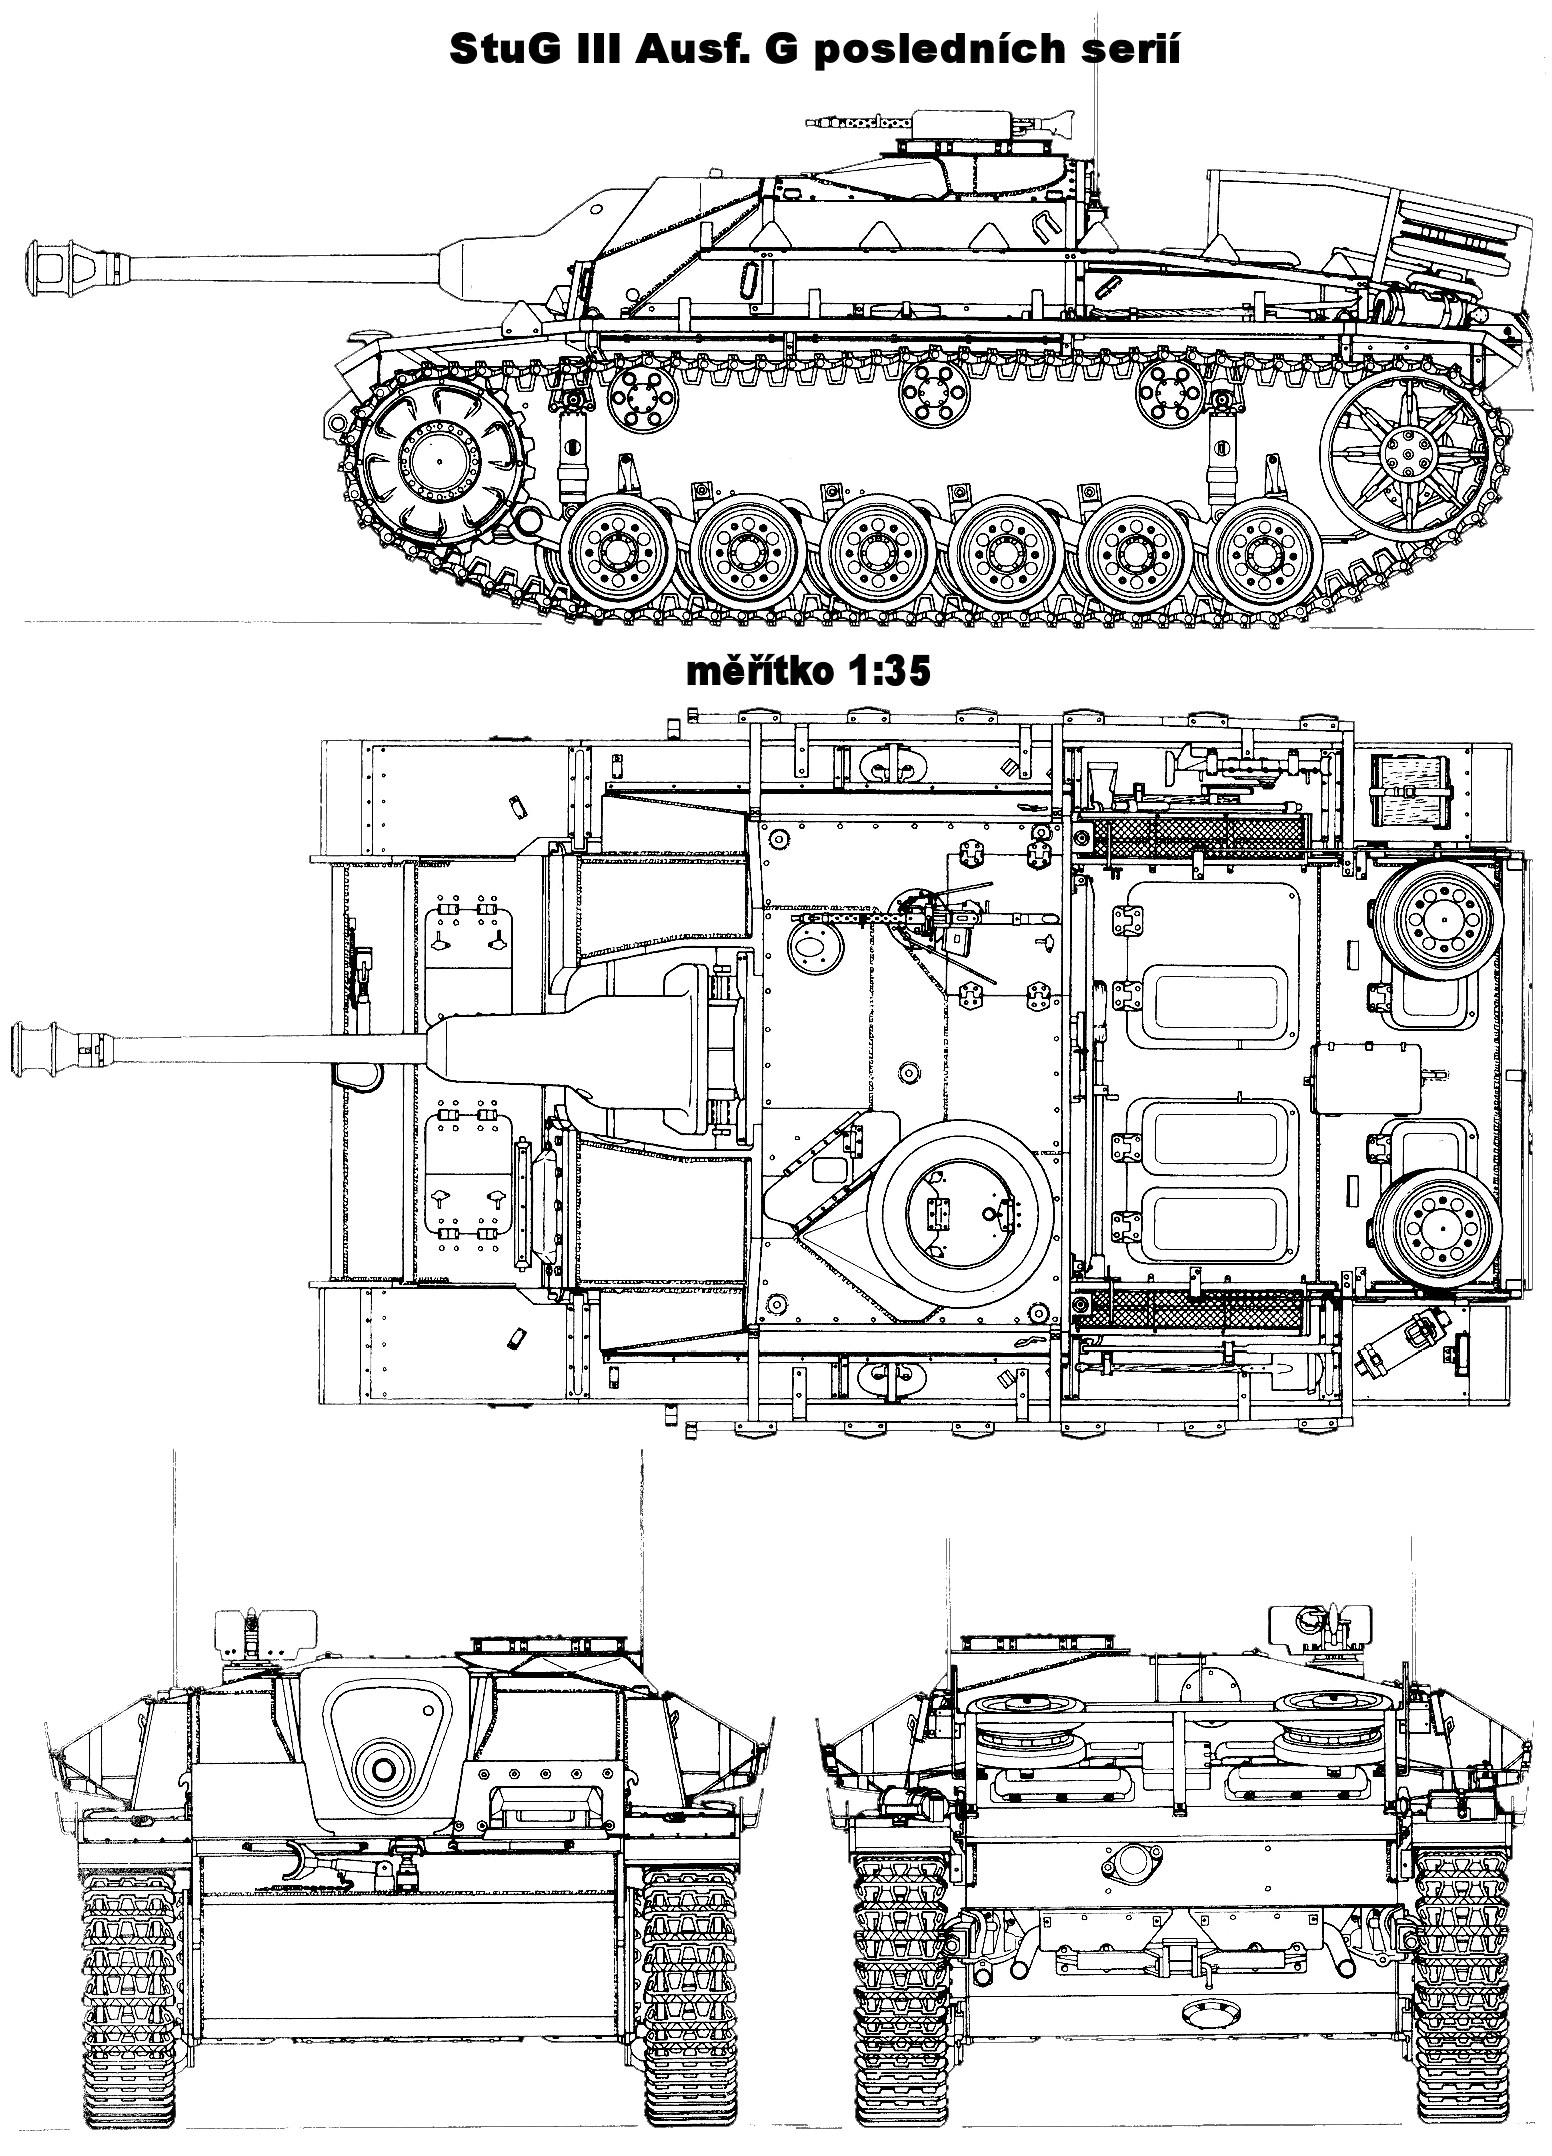 StuG III Ausf.G blueprint